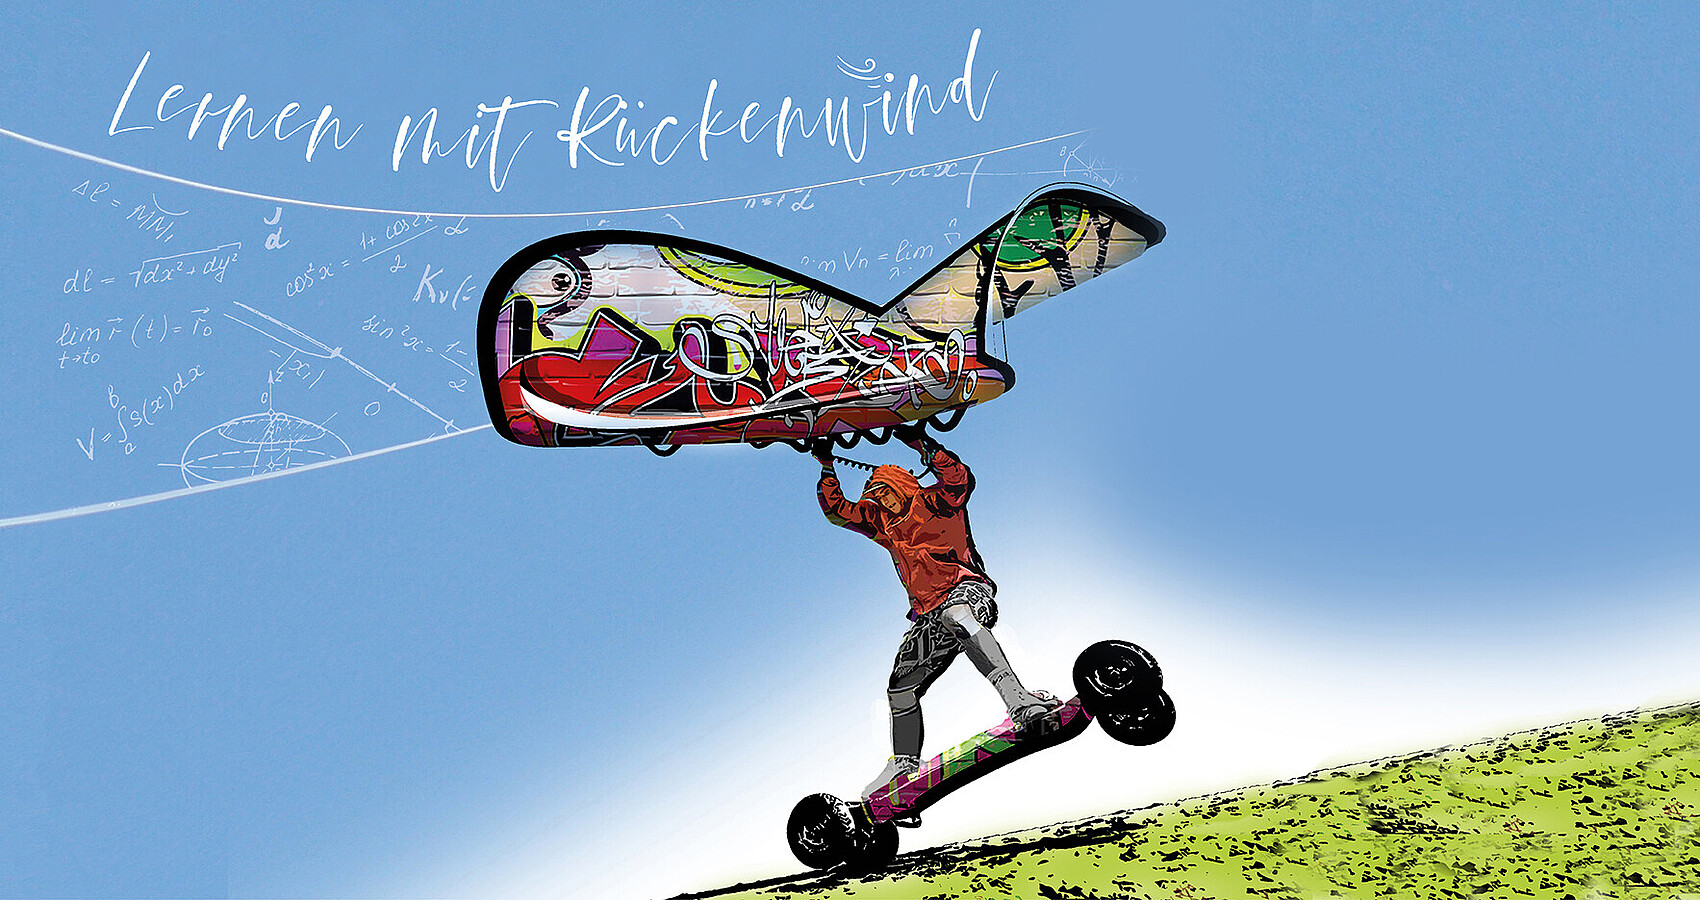 Ein Jugendlicher auf einem Skateboard